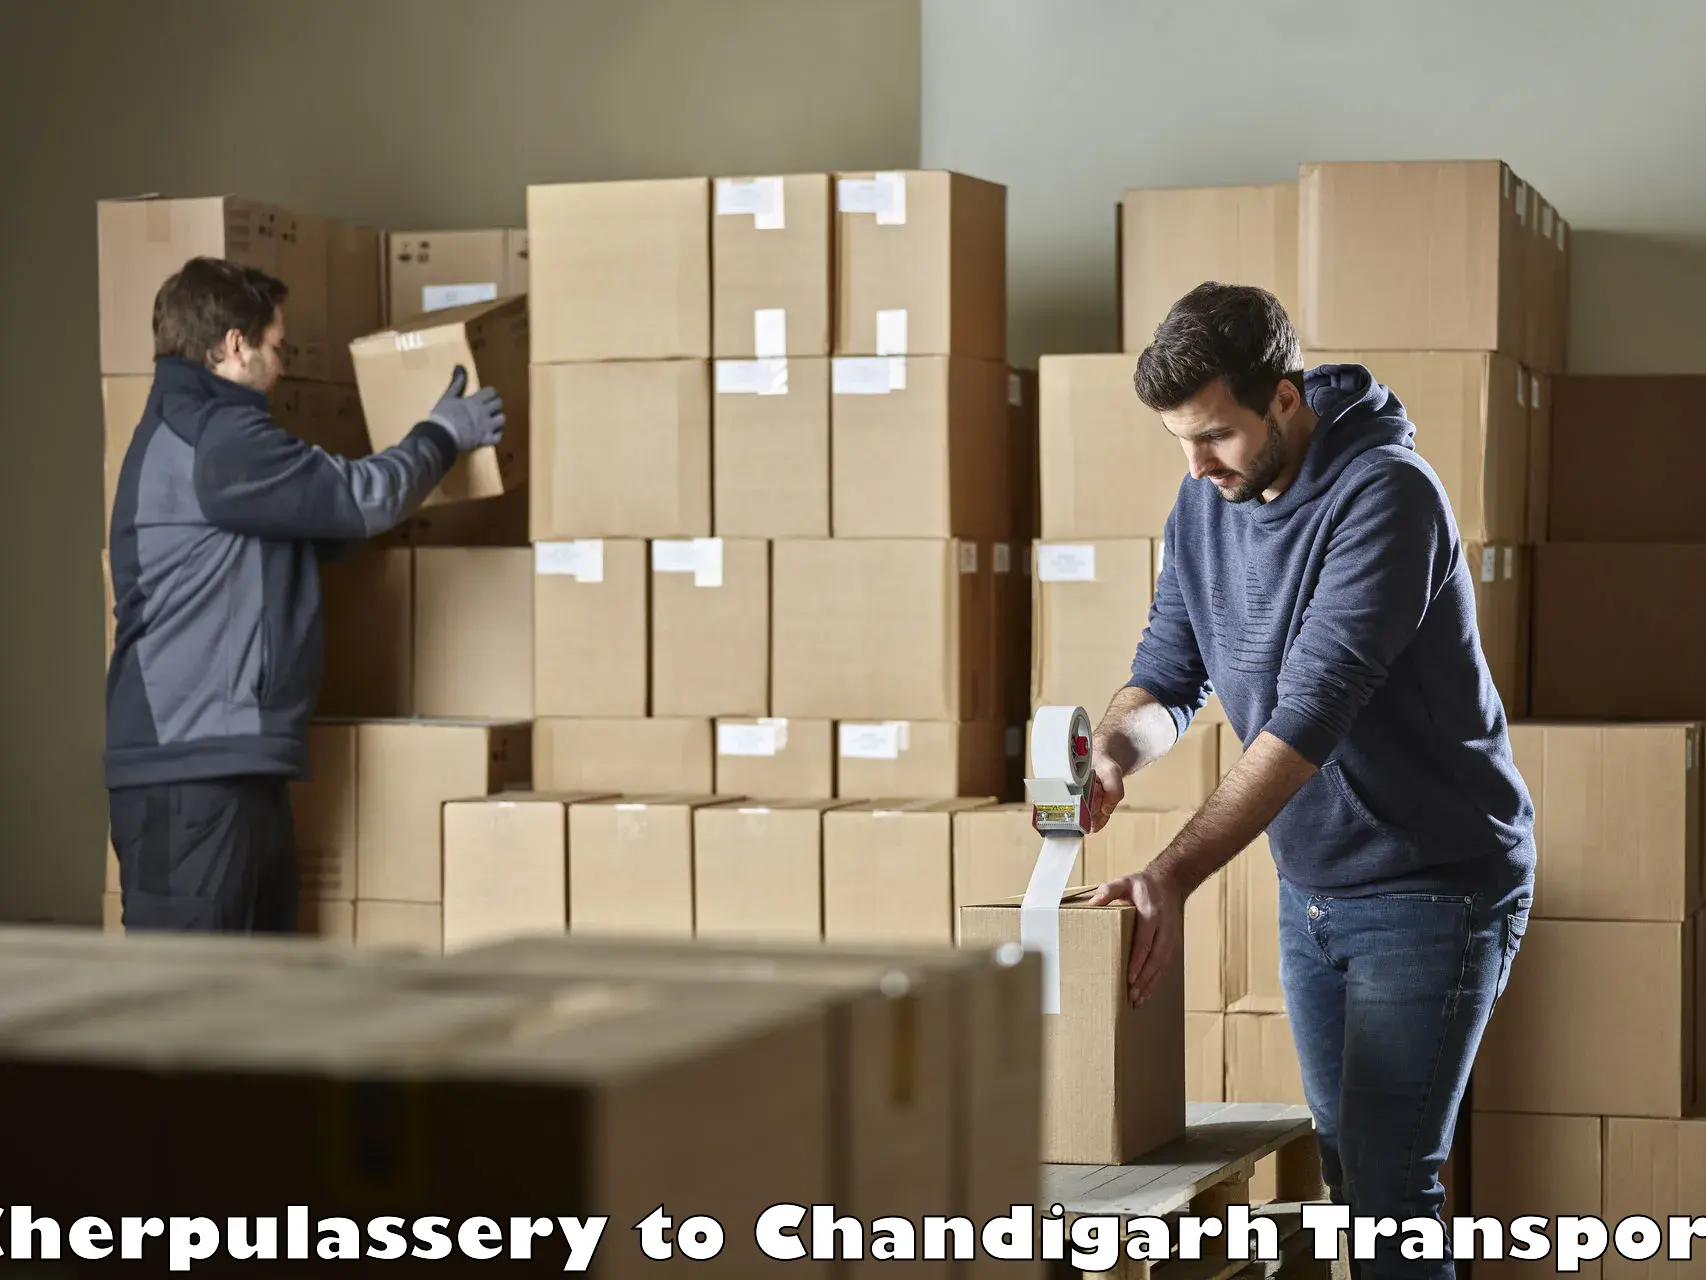 Transport in sharing Cherpulassery to Chandigarh